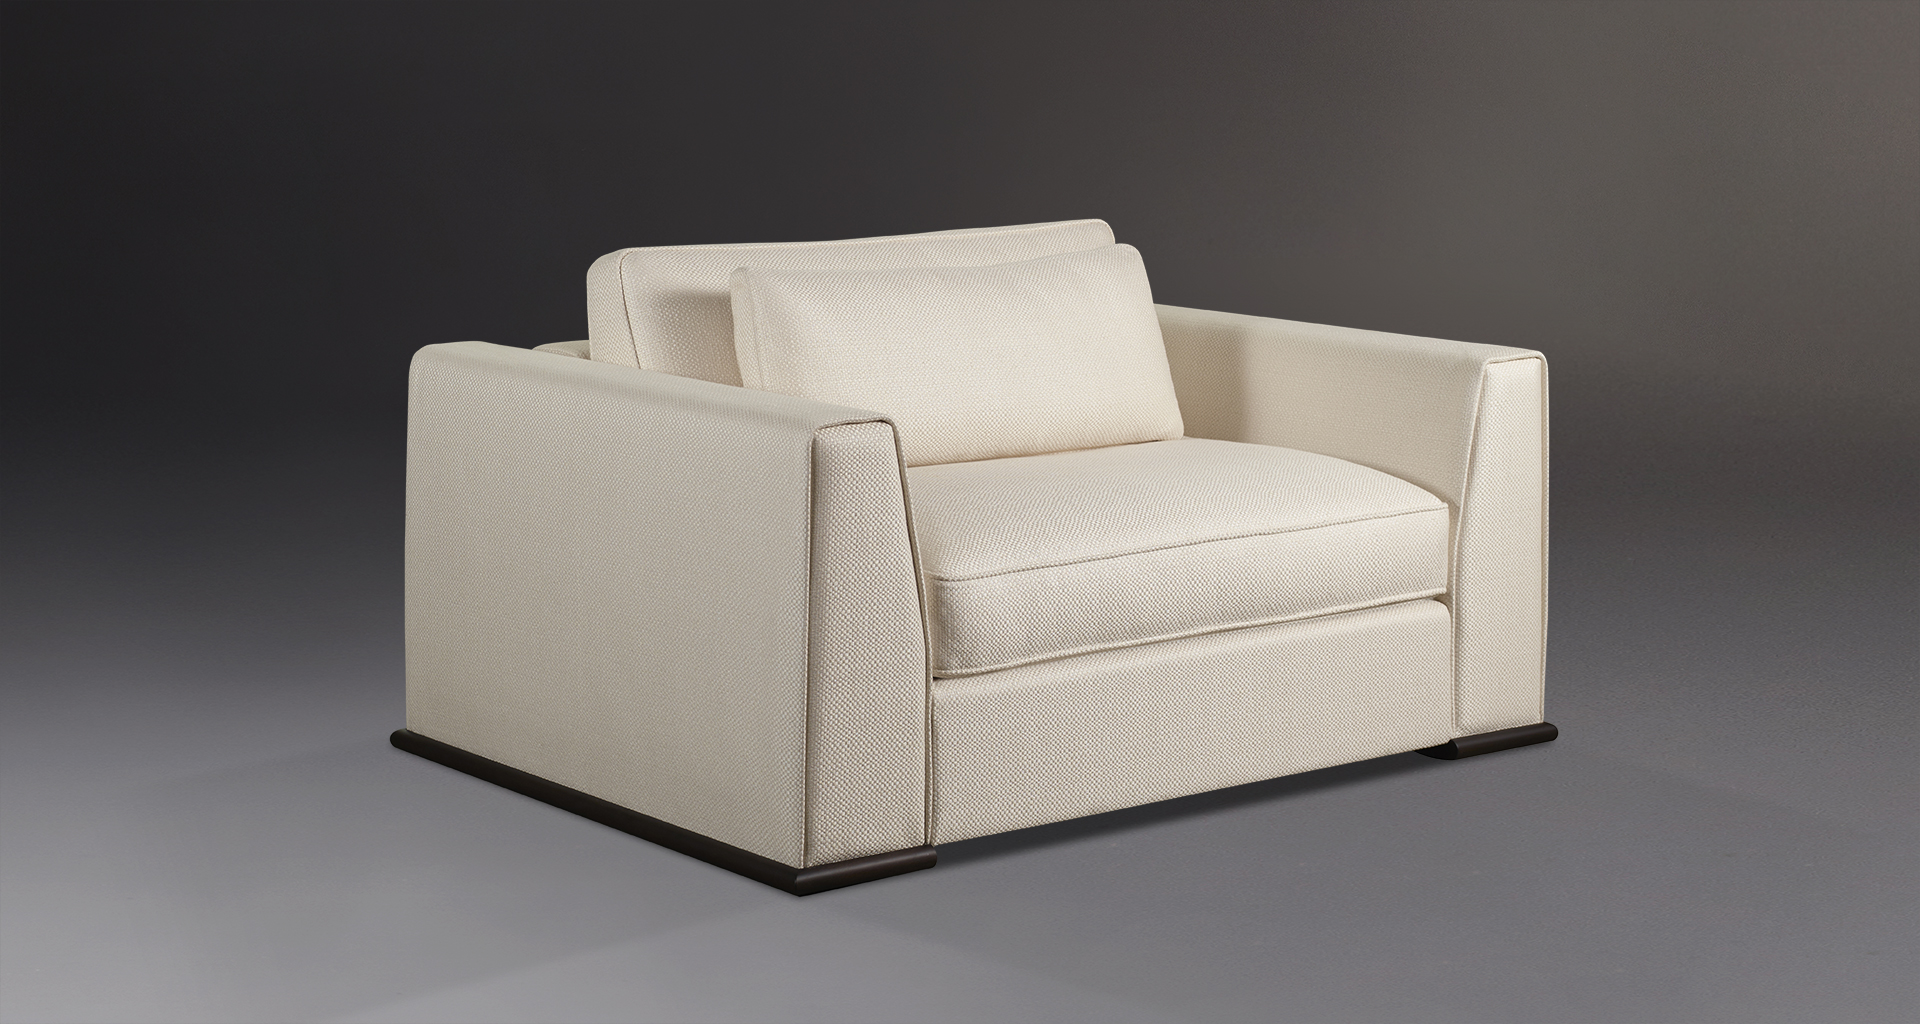 Ulderico è un divano in legno rivestito in tessuto del catalogo di Promemoria | Promemoria